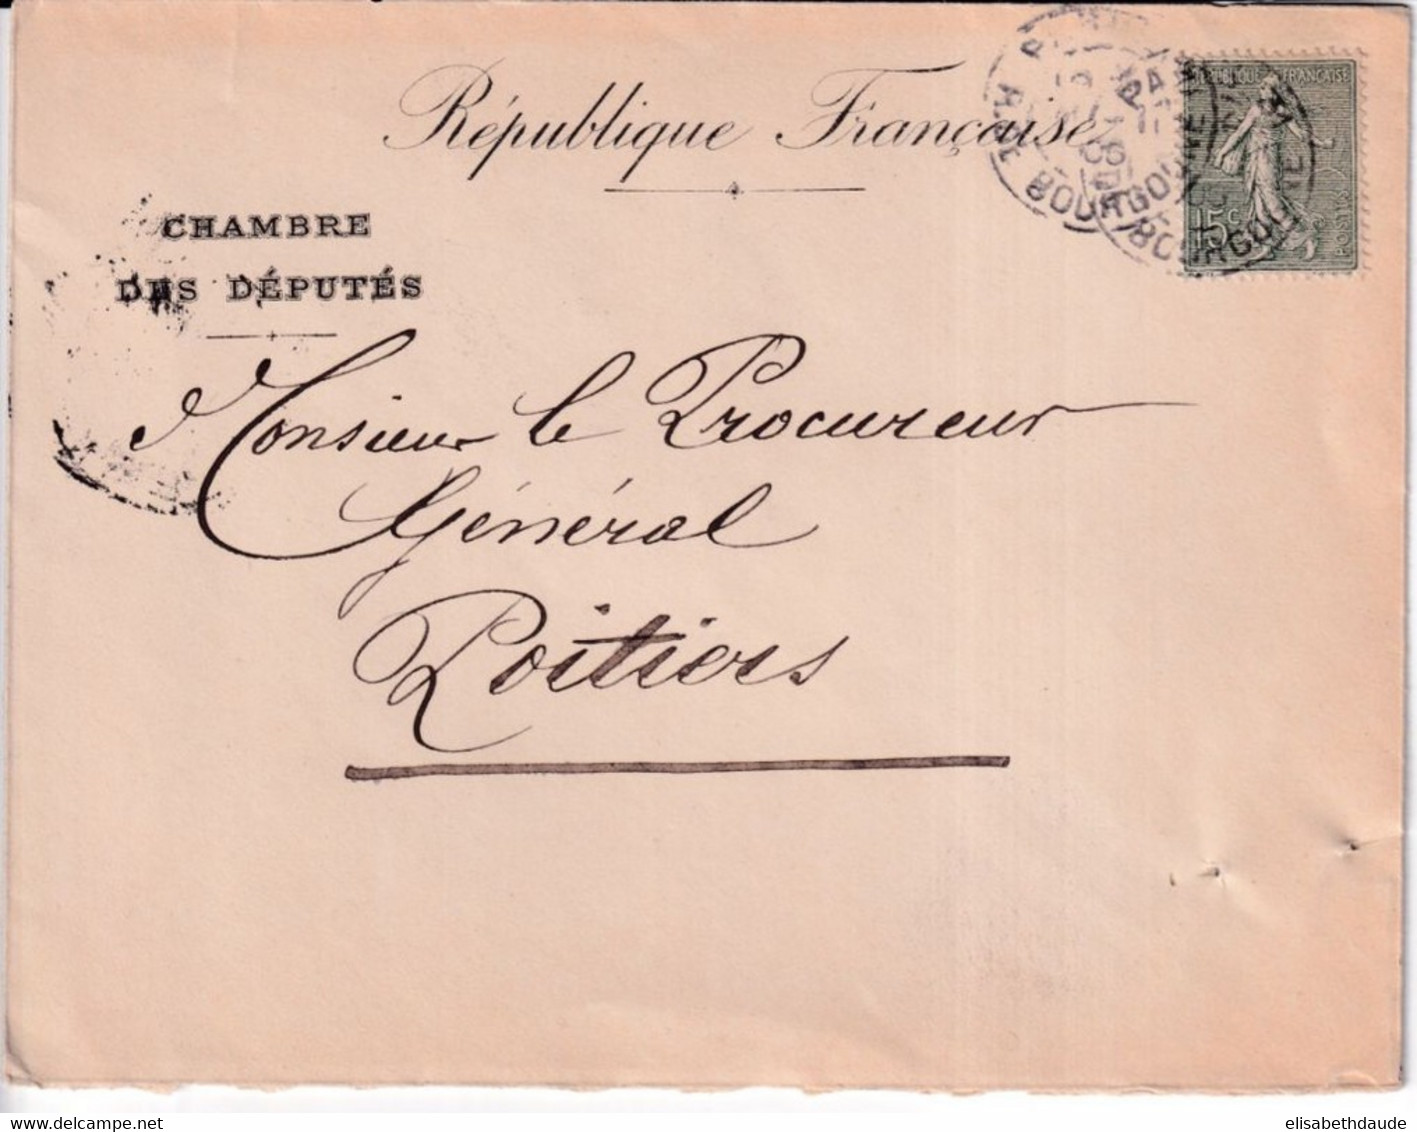 1906 - SEMEUSE - ENVELOPPE de la CHAMBRE DES DEPUTES =>  POITIERS (VIENNE)